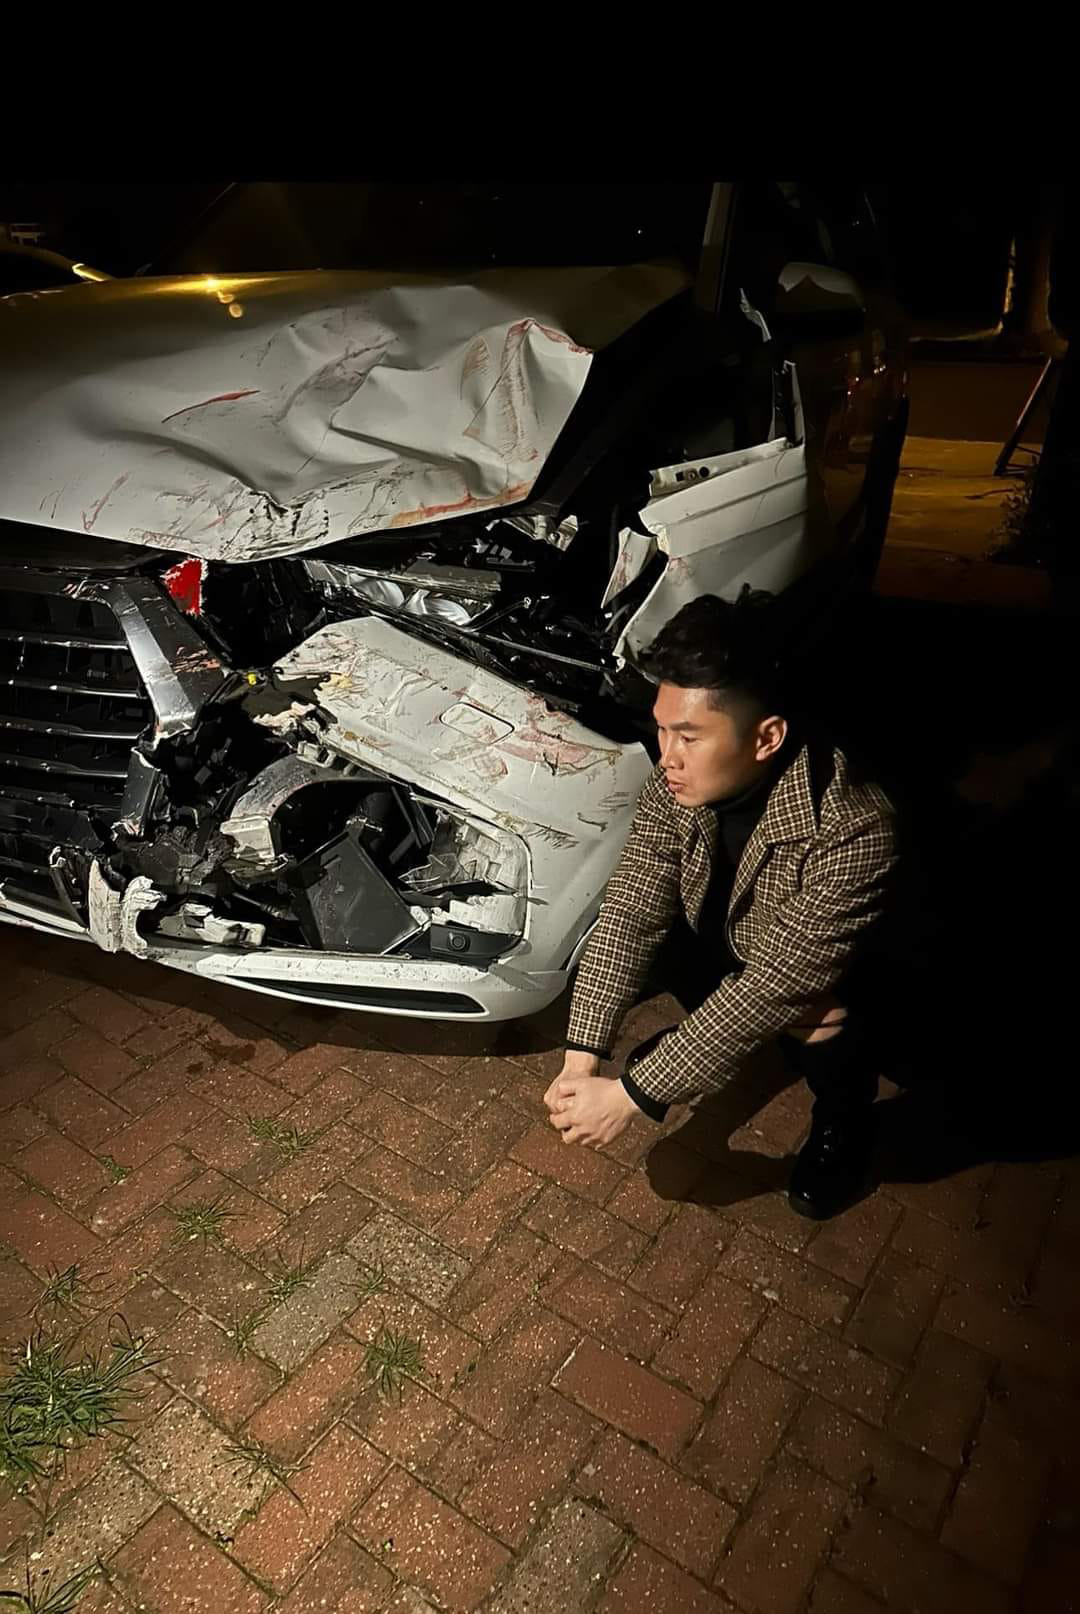 Du Thiên gặp tai nạn xe hơi nghiêm trọng ở Hàn Quốc ngay ngày Mùng 1 Tết.